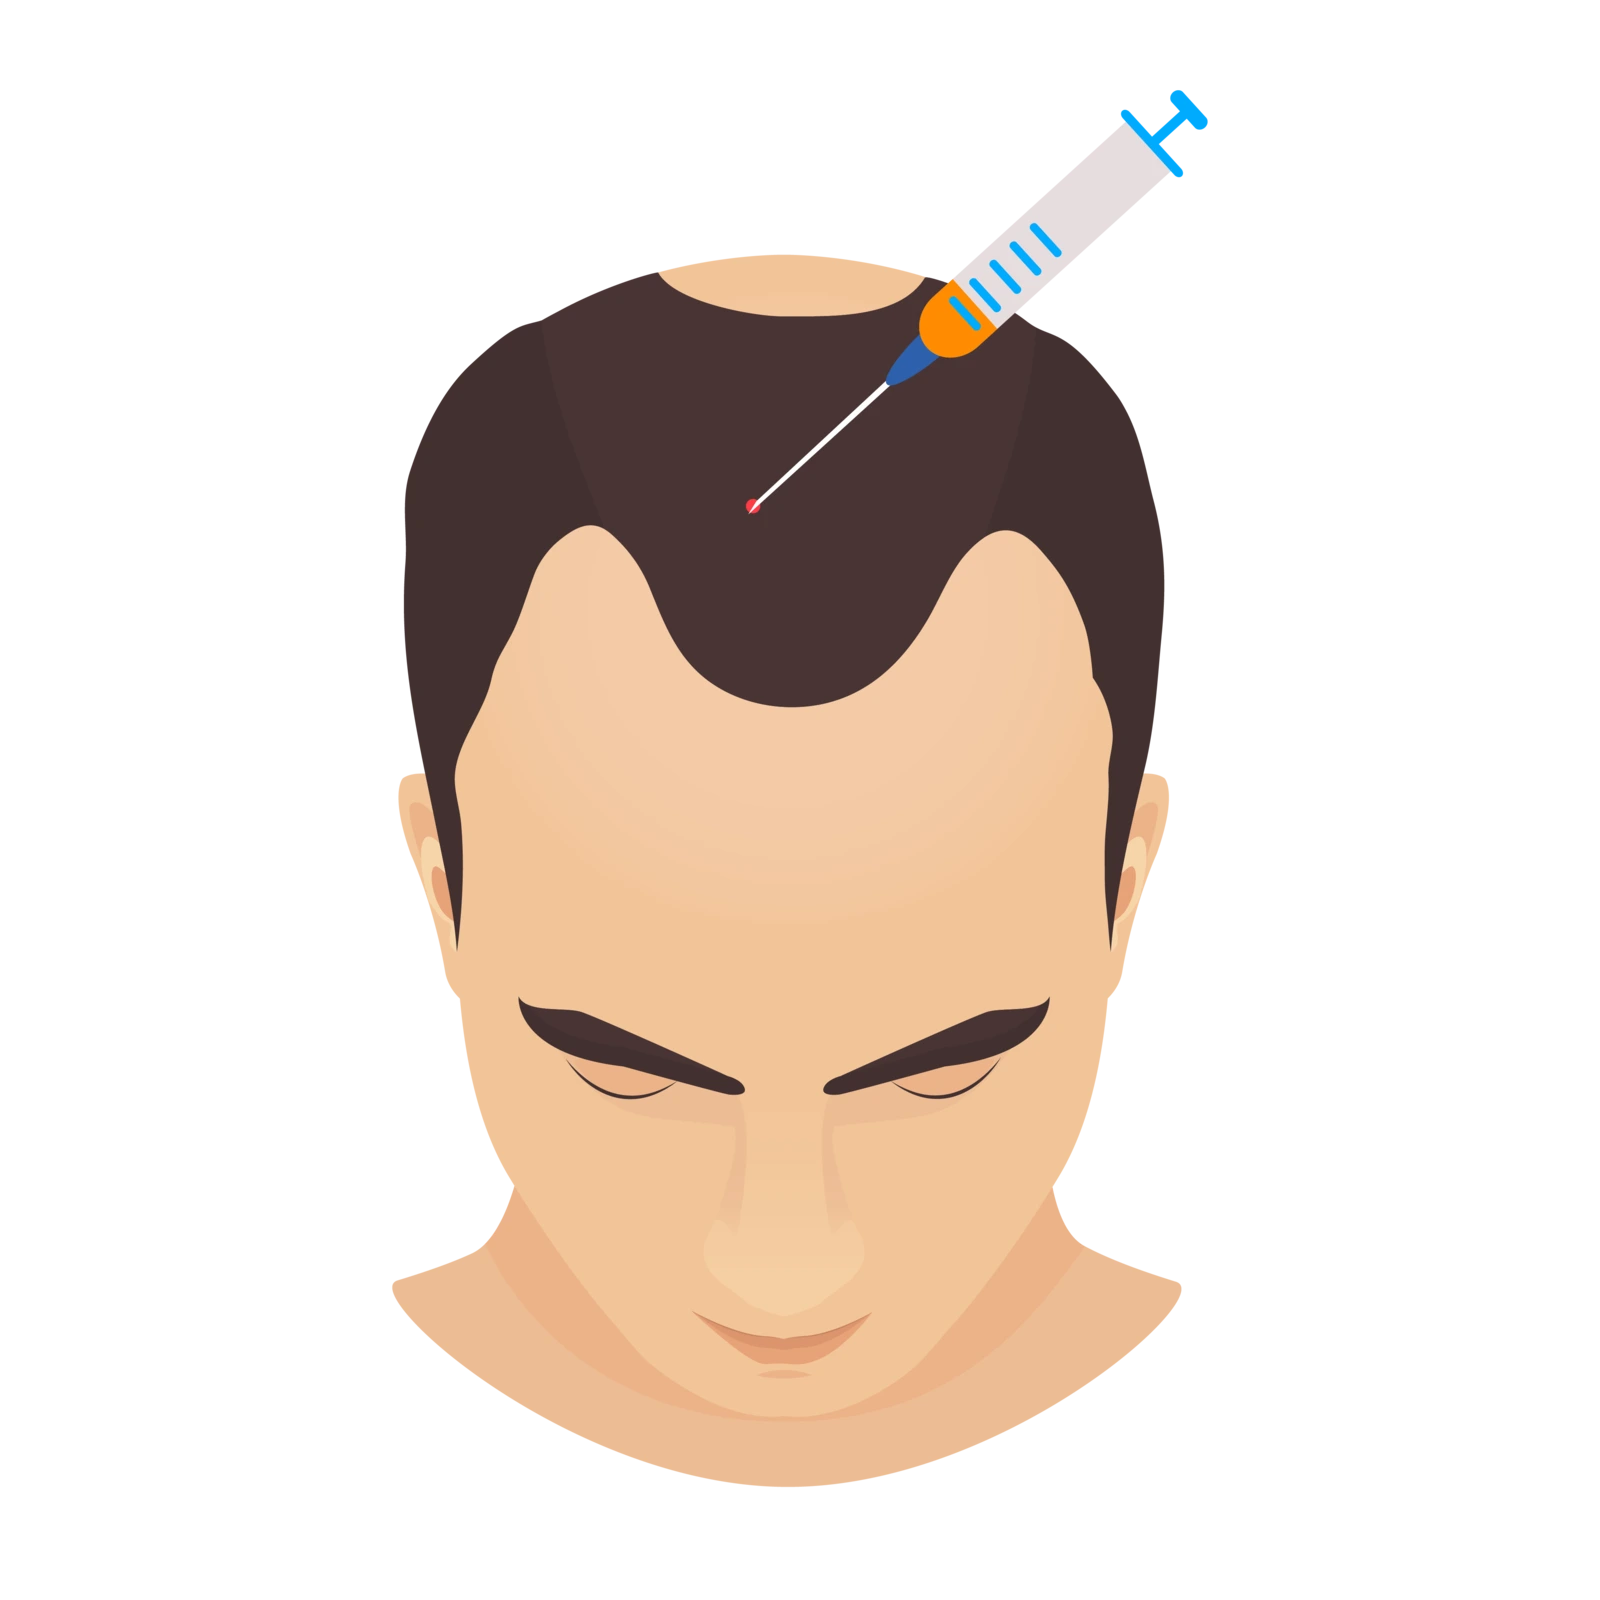 Grafik eines männlichen Kopfes, dem eine Spritze mit fibrinhaltigem Plasma (I-PRF) in den Stirnbereich injiziert wird